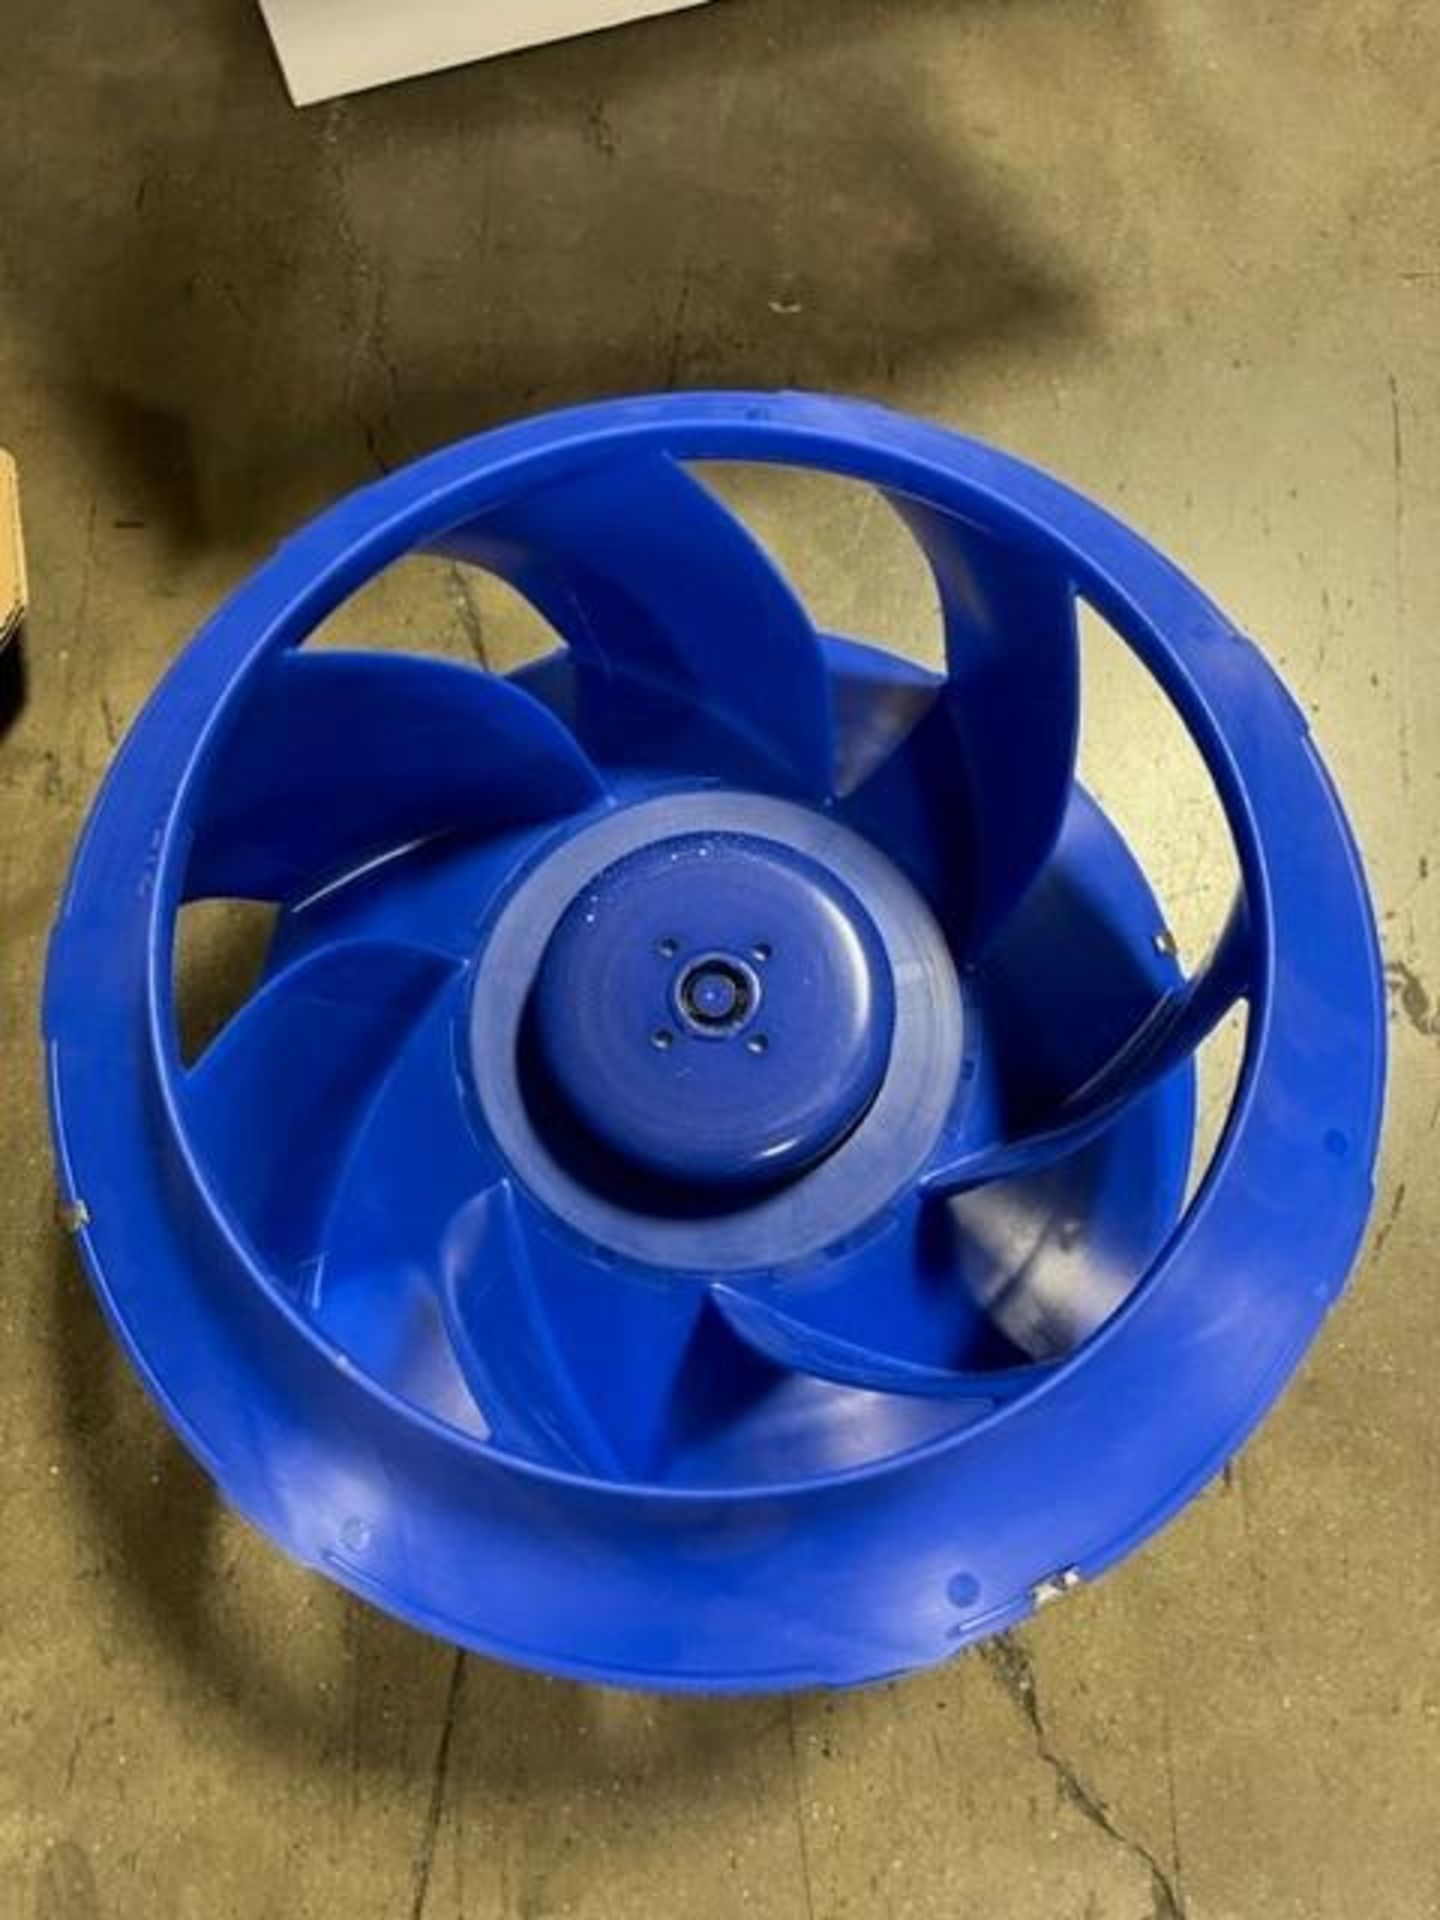 (2) Ziehl-Abegg EC Blue Spindle Motor Impeller Fans, Model RH35V-61KBD, 100-130V, 50/60 Hz - Image 4 of 8